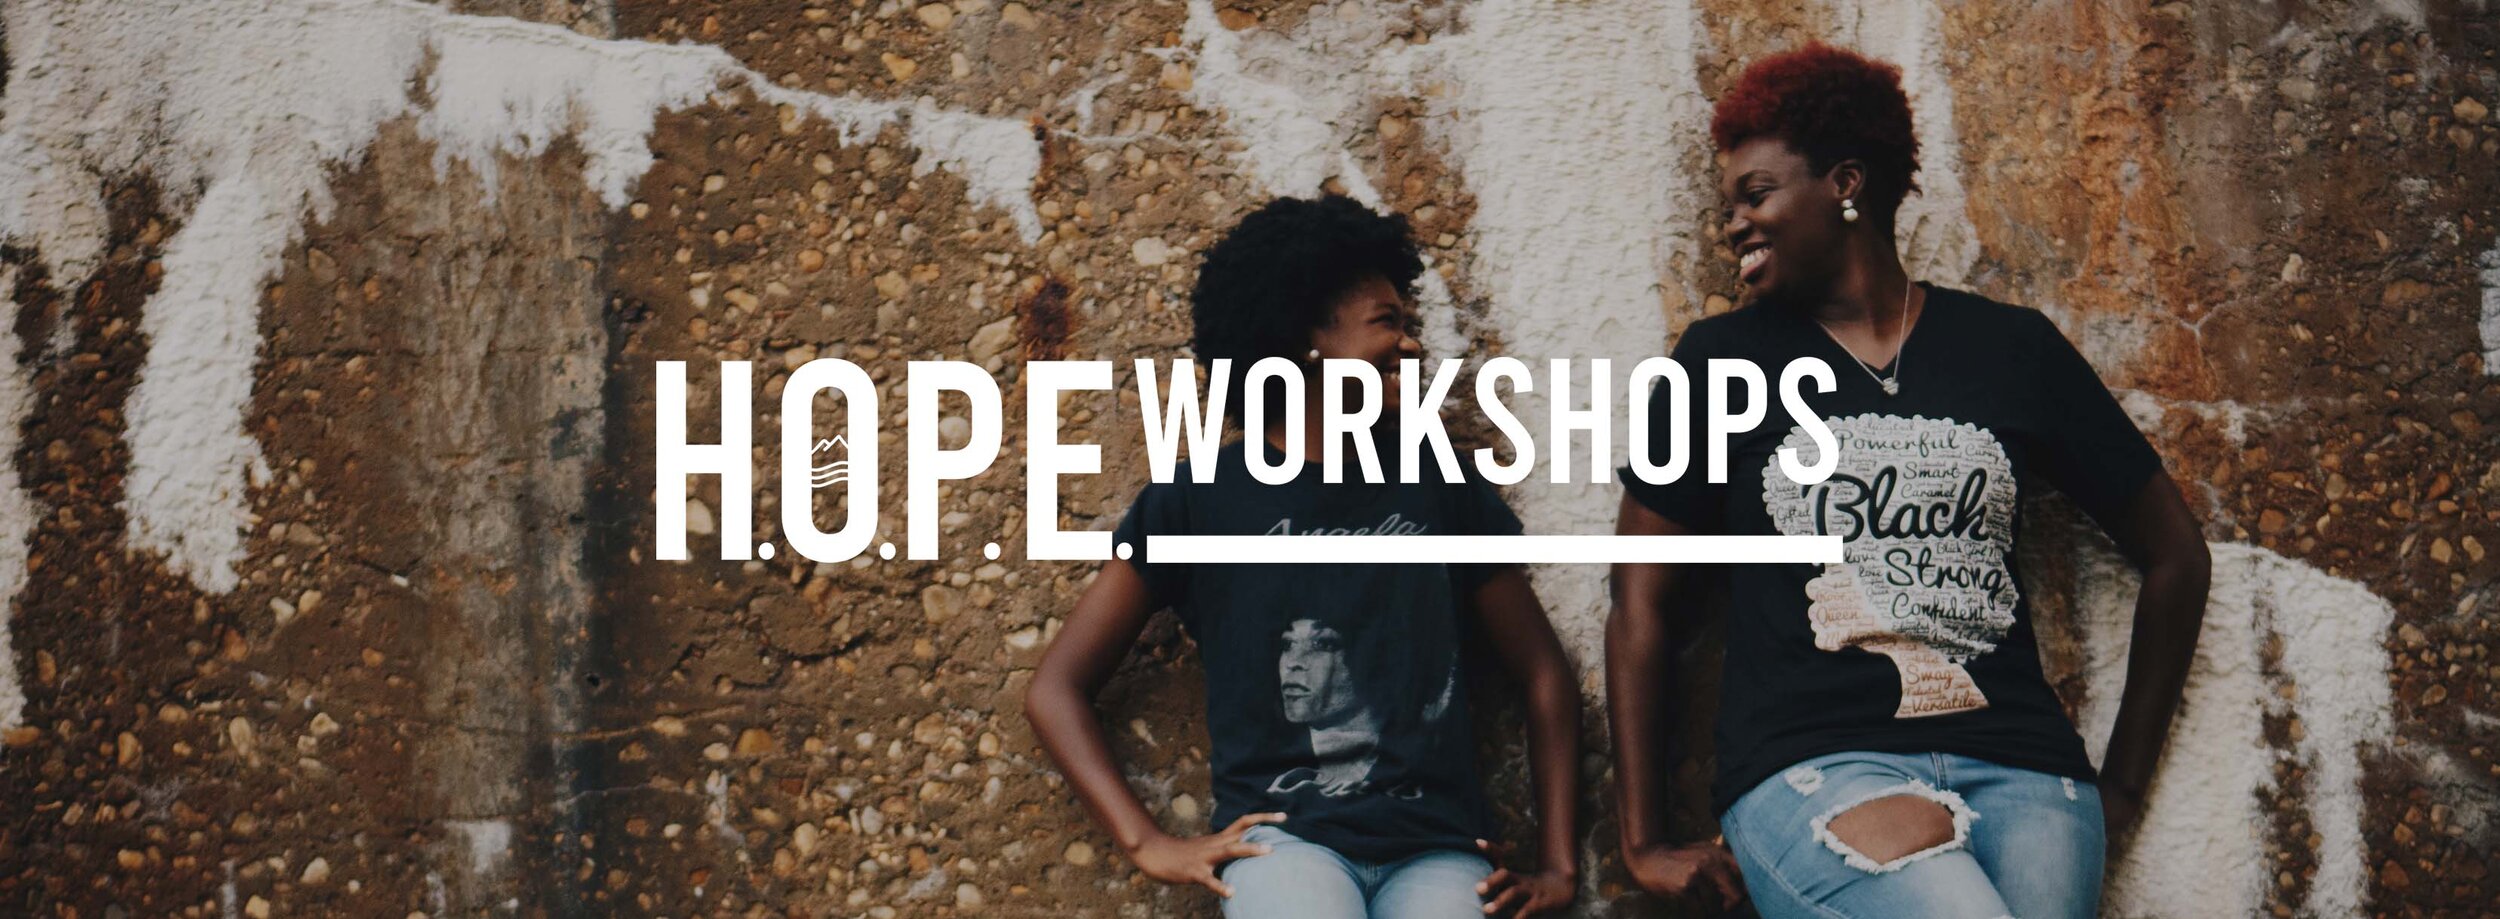 Hope Workshops Banner.jpg